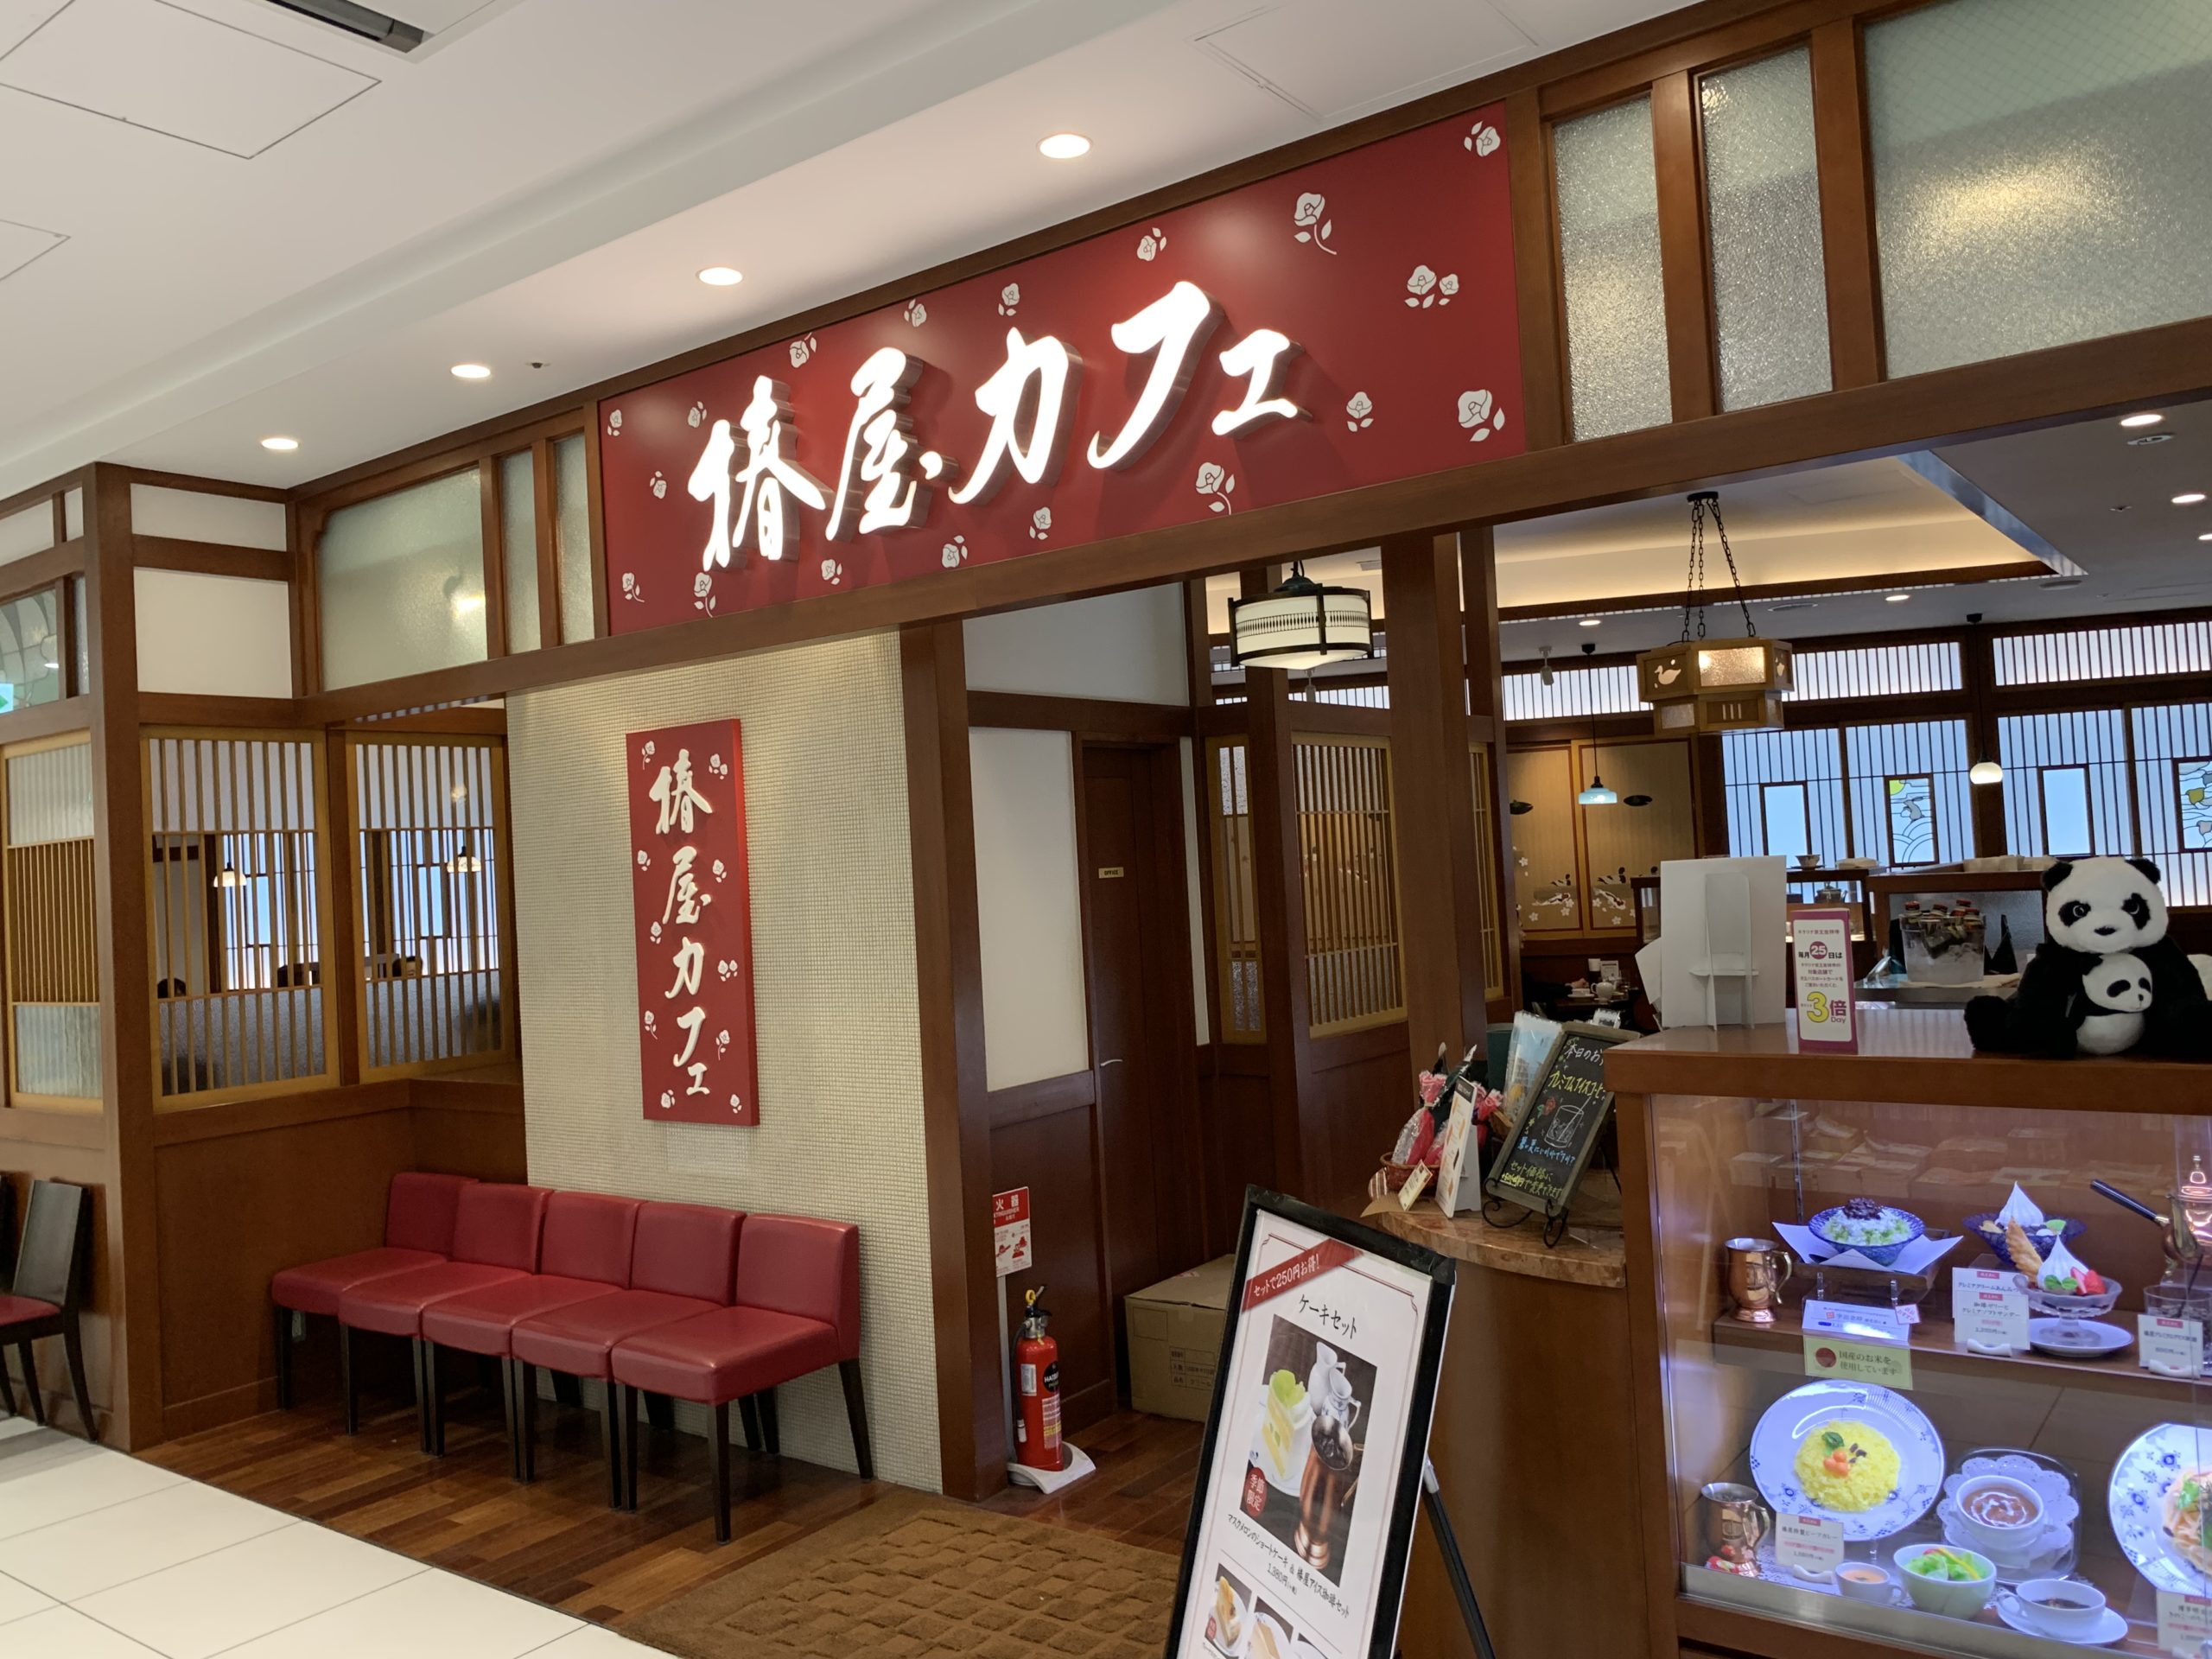 上野駅 京成上野駅 Pc作業 勉強できるカフェ 地味型ノマドワーカーの作り方